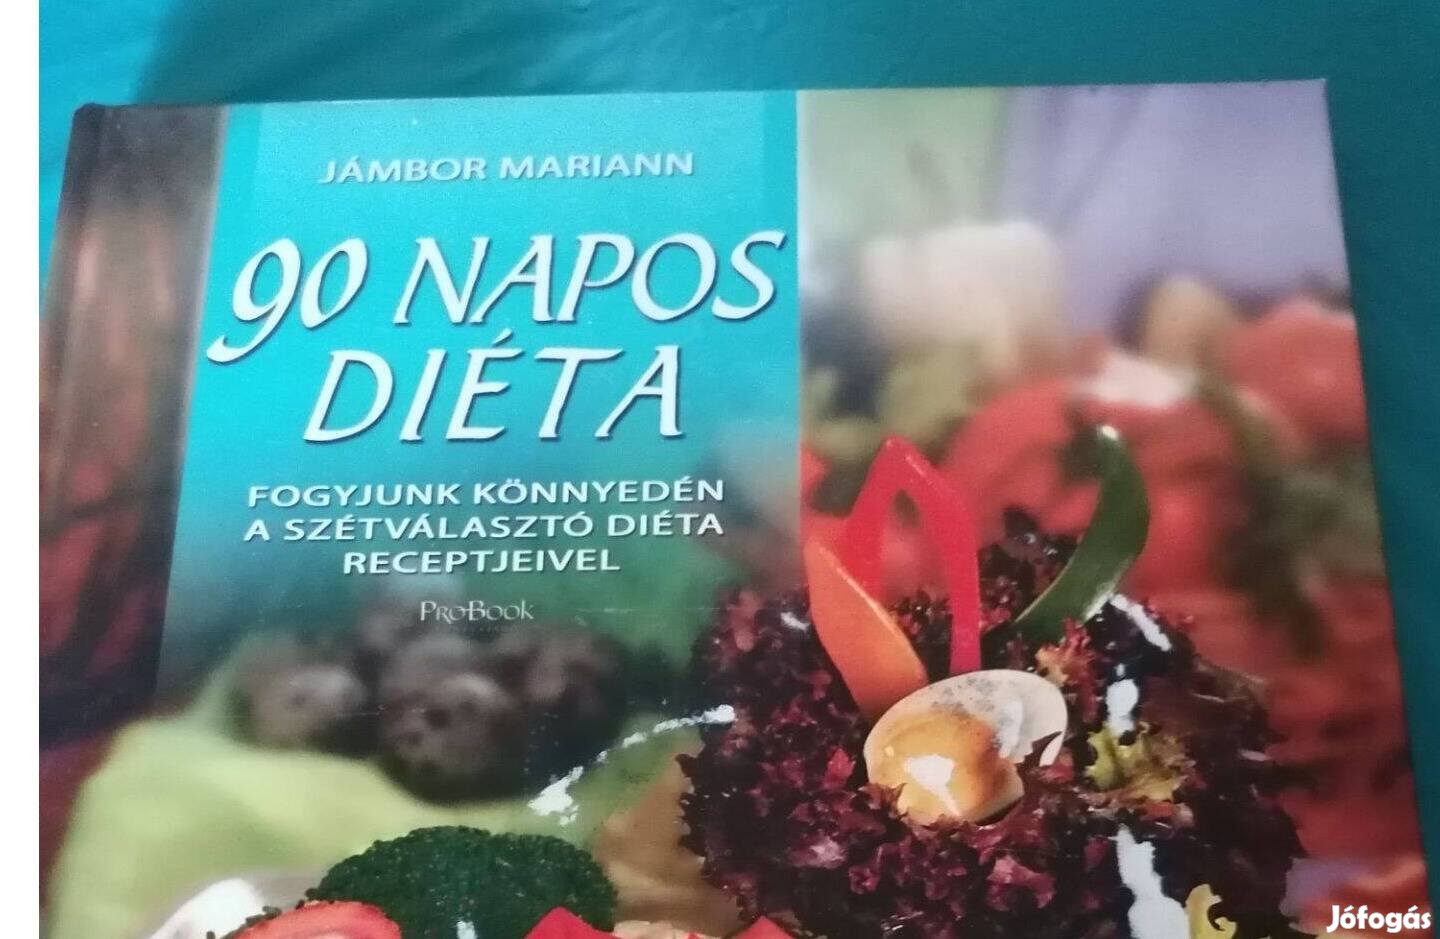 90 napos diéta - szakácskönyv